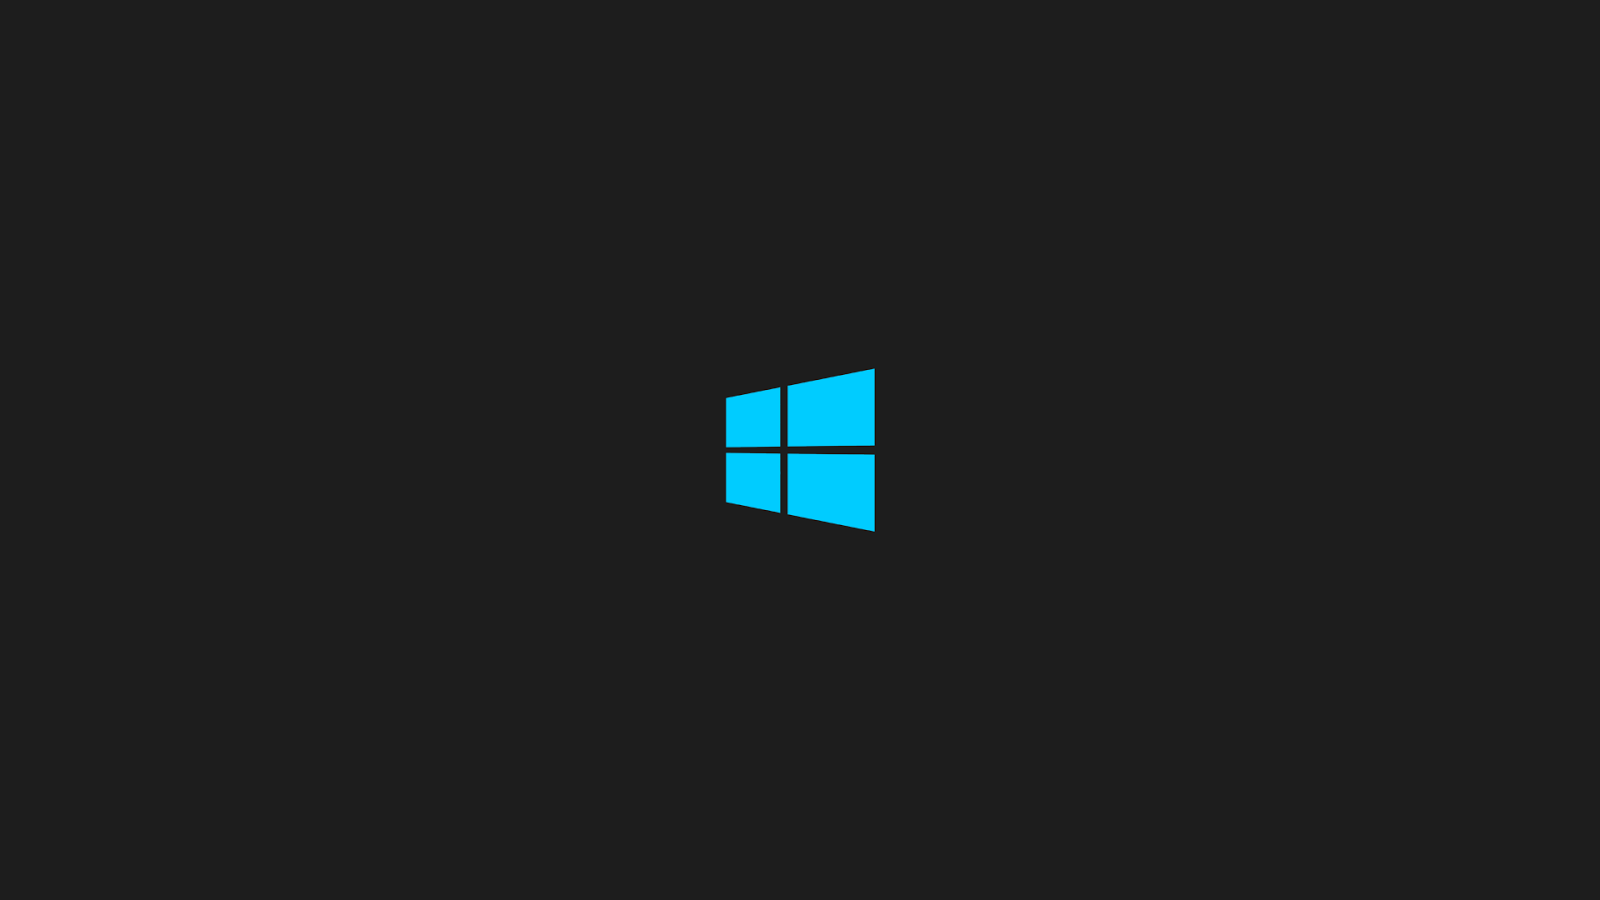 Với hình nền đen trên Windows 10, bạn sẽ tạo cảm giác hiện đại và tinh tế cho máy tính của mình. Lựa chọn hình nền đen sẽ giúp mọi thứ trở nên trang trọng hơn và nhấn mạnh sự chuyên nghiệp. Hãy lựa chọn ngay hình ảnh bạn thích nhất!